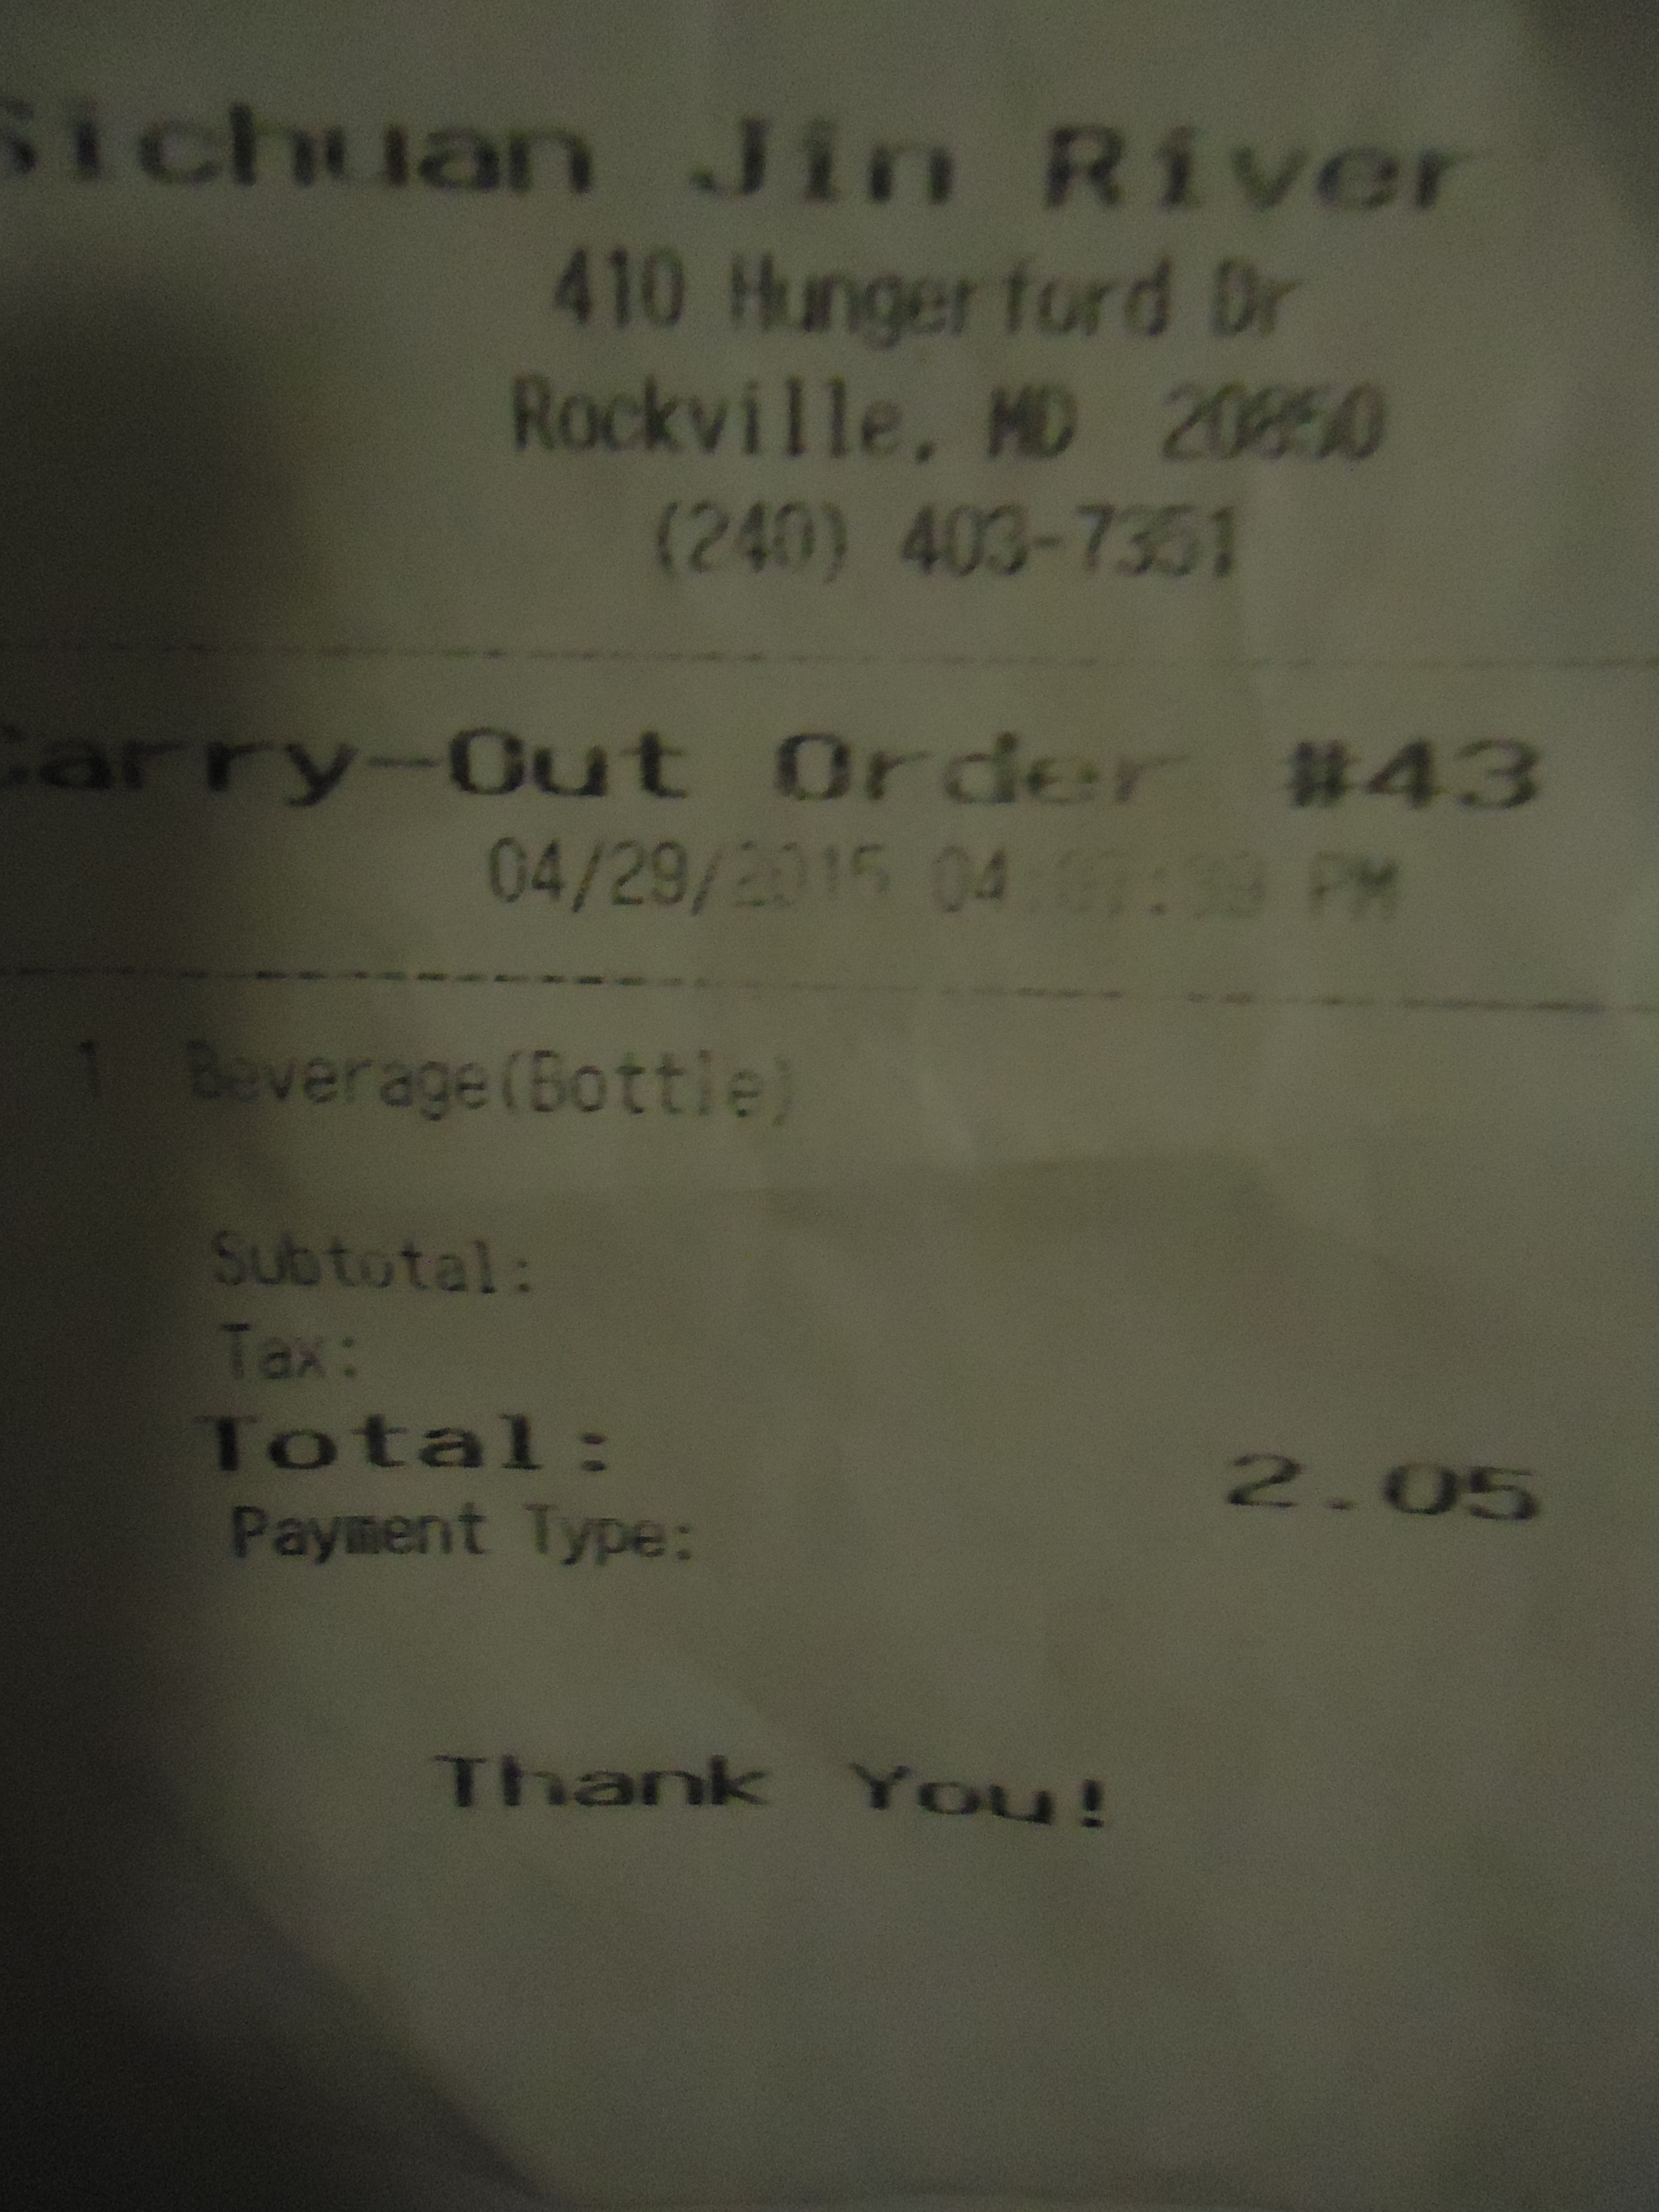 restaurant receipt